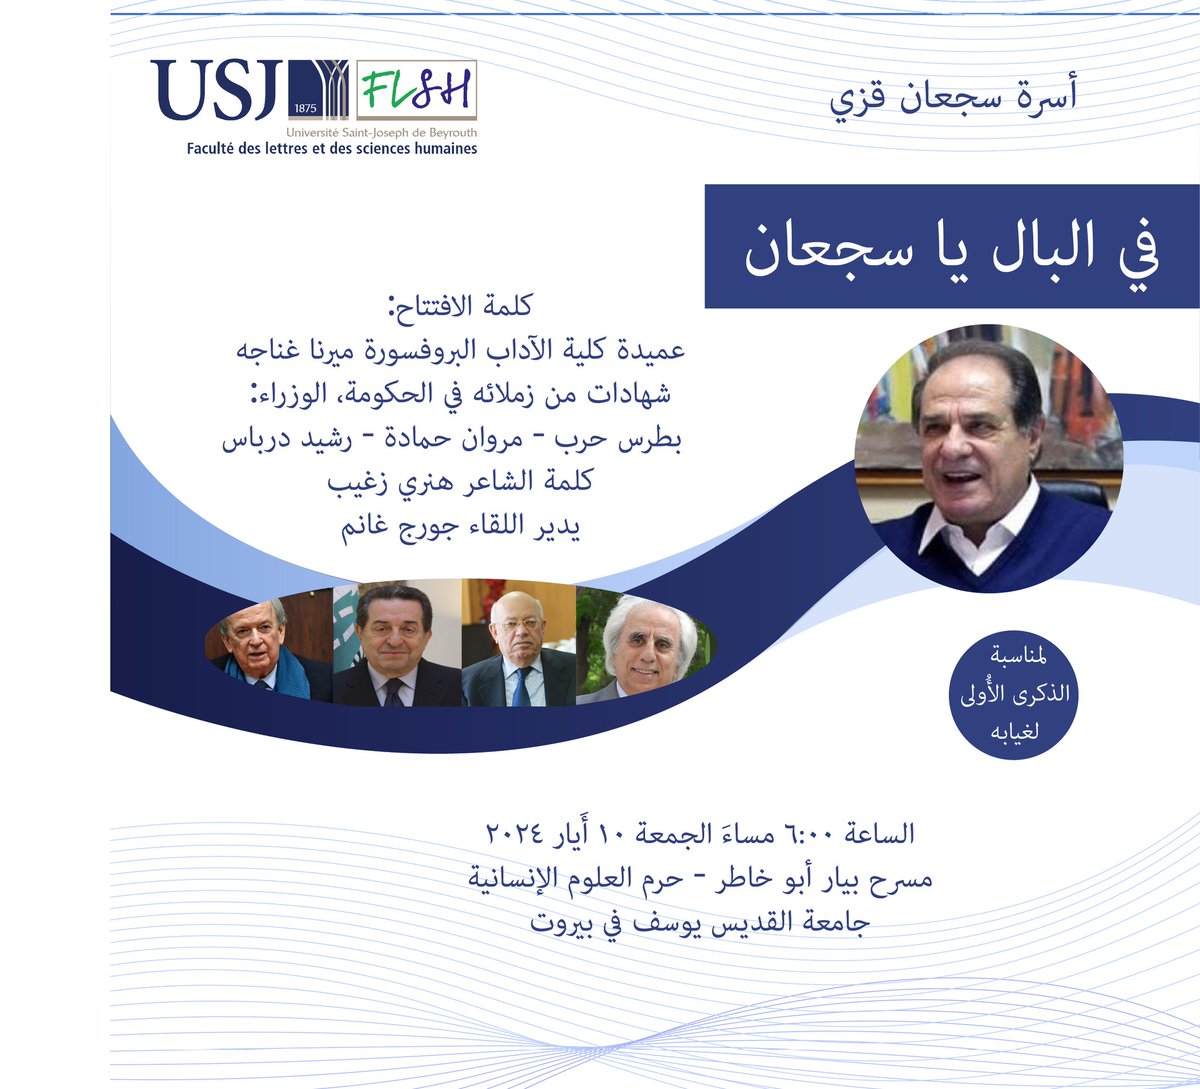 لمناسبة الذكرى الأولى لغياب الوزير السابق المحامي سجعان قزي، تدعوكم كلية الآداب إلى حفل تكريمي يوم الجمعة ١٠ أيار. الدعوة مفتوحة #USJLiban #FLSH_USJ